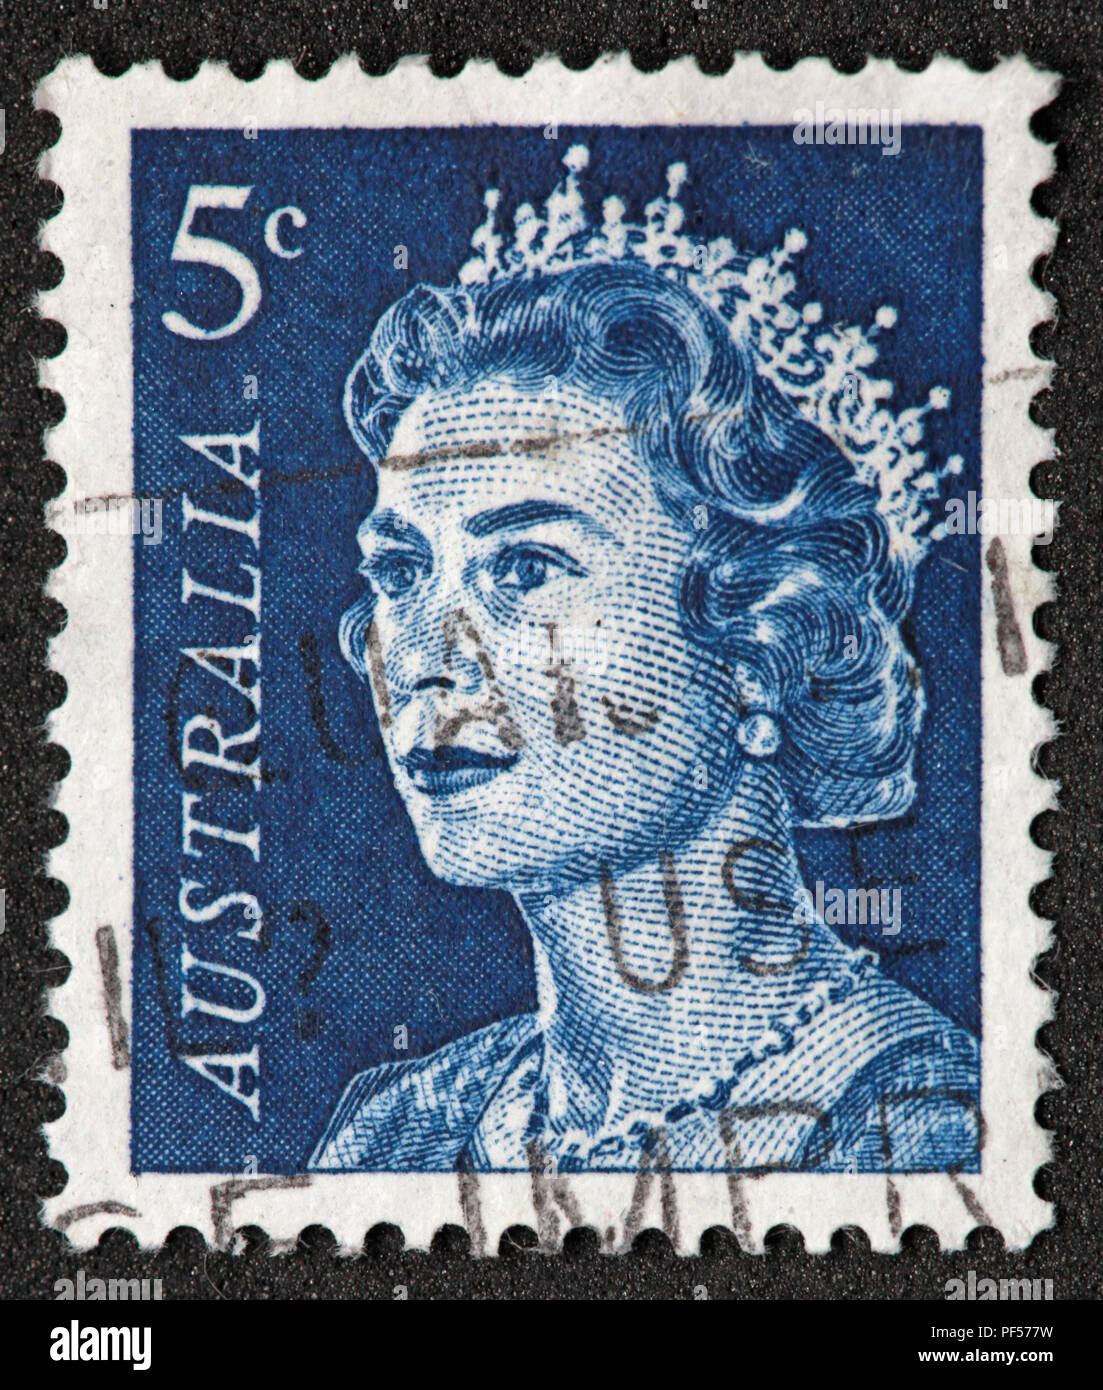 Utilisé en Australie 5c blue Stamp avec la reine Elizabeth II Banque D'Images